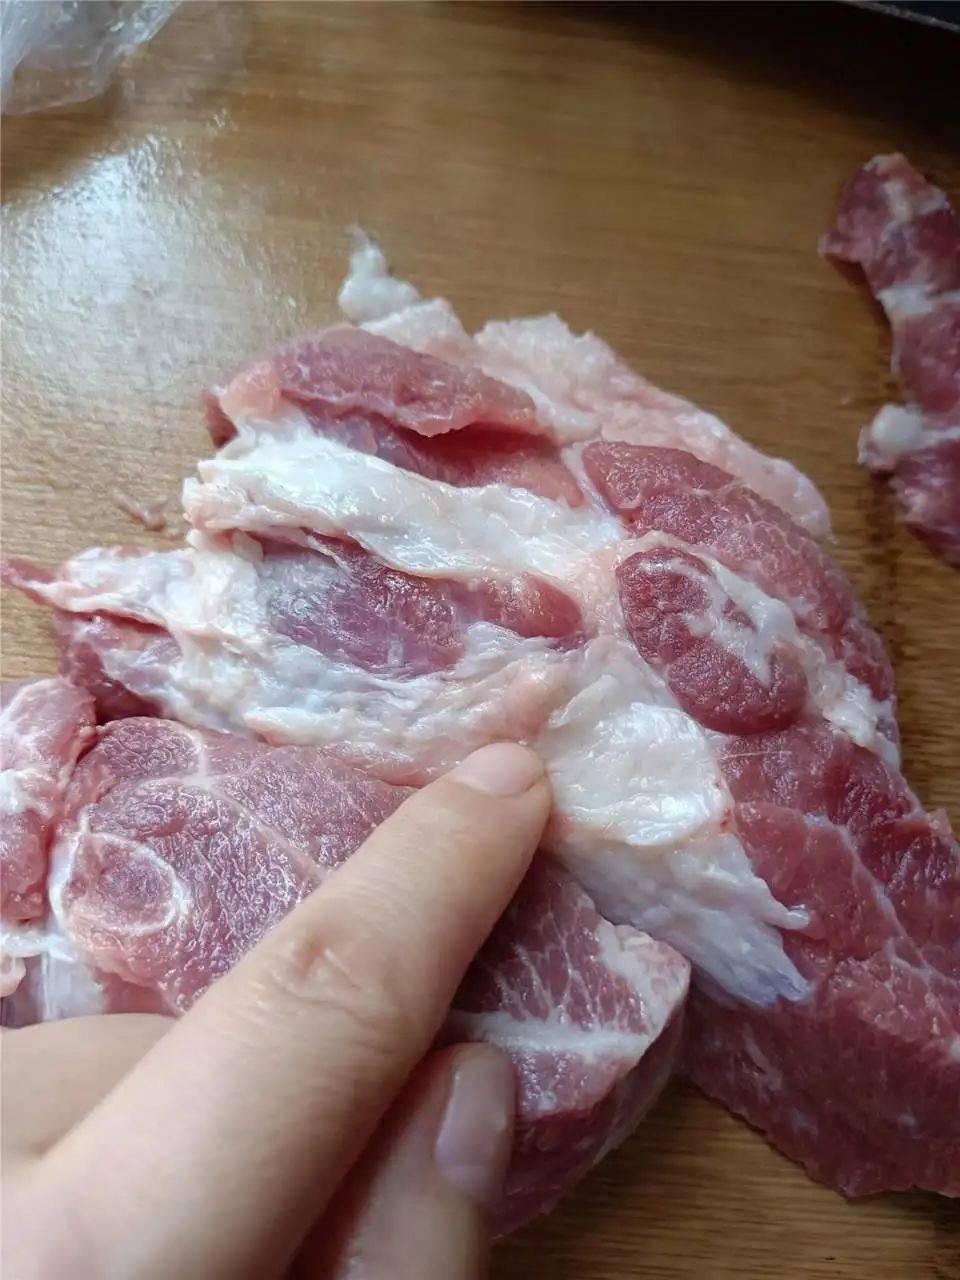 网友爆料:大家买猪肉一定要看清楚,不然容易买到病猪肉